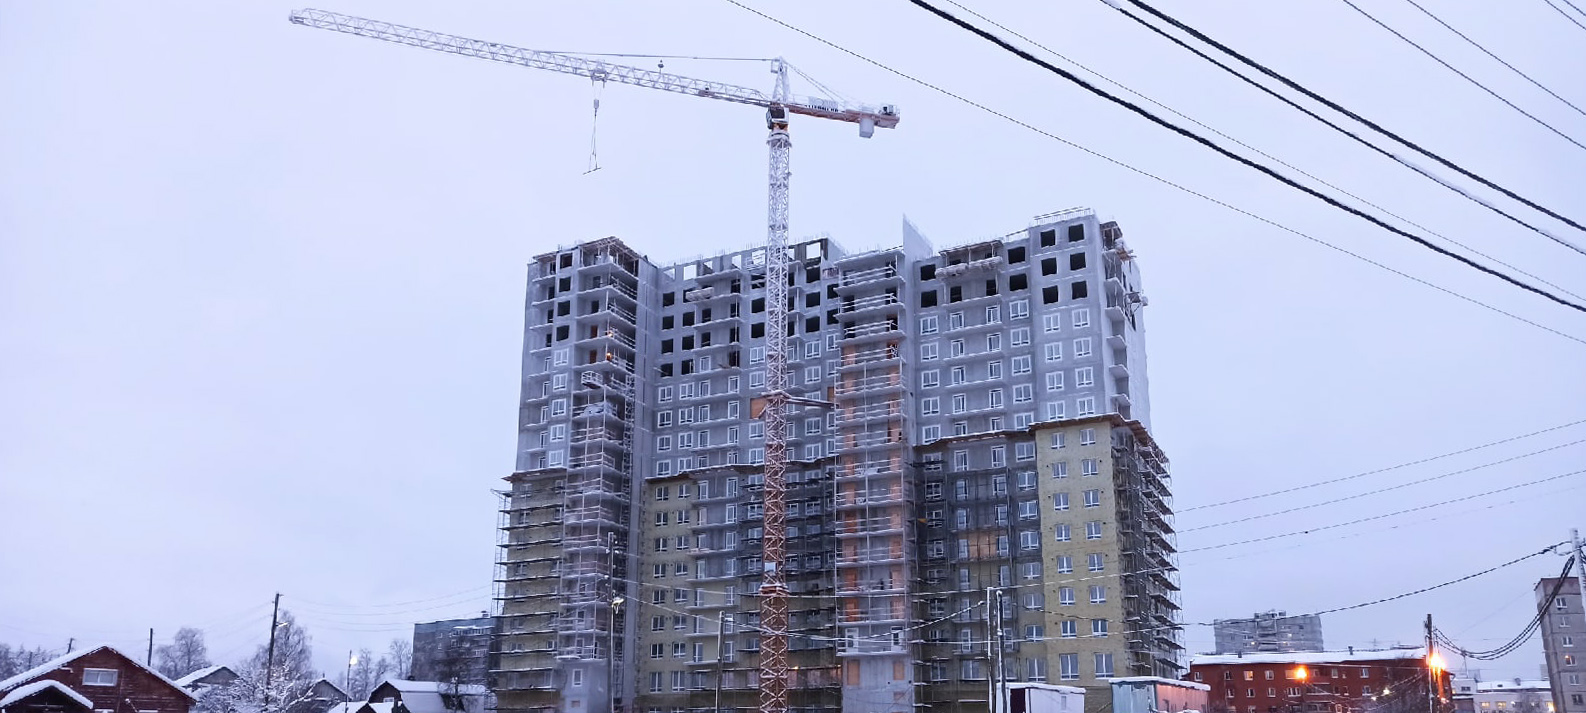 Стали известны подробности трагедии на стройплощадке в Петрозаводске, где обнаружен труп